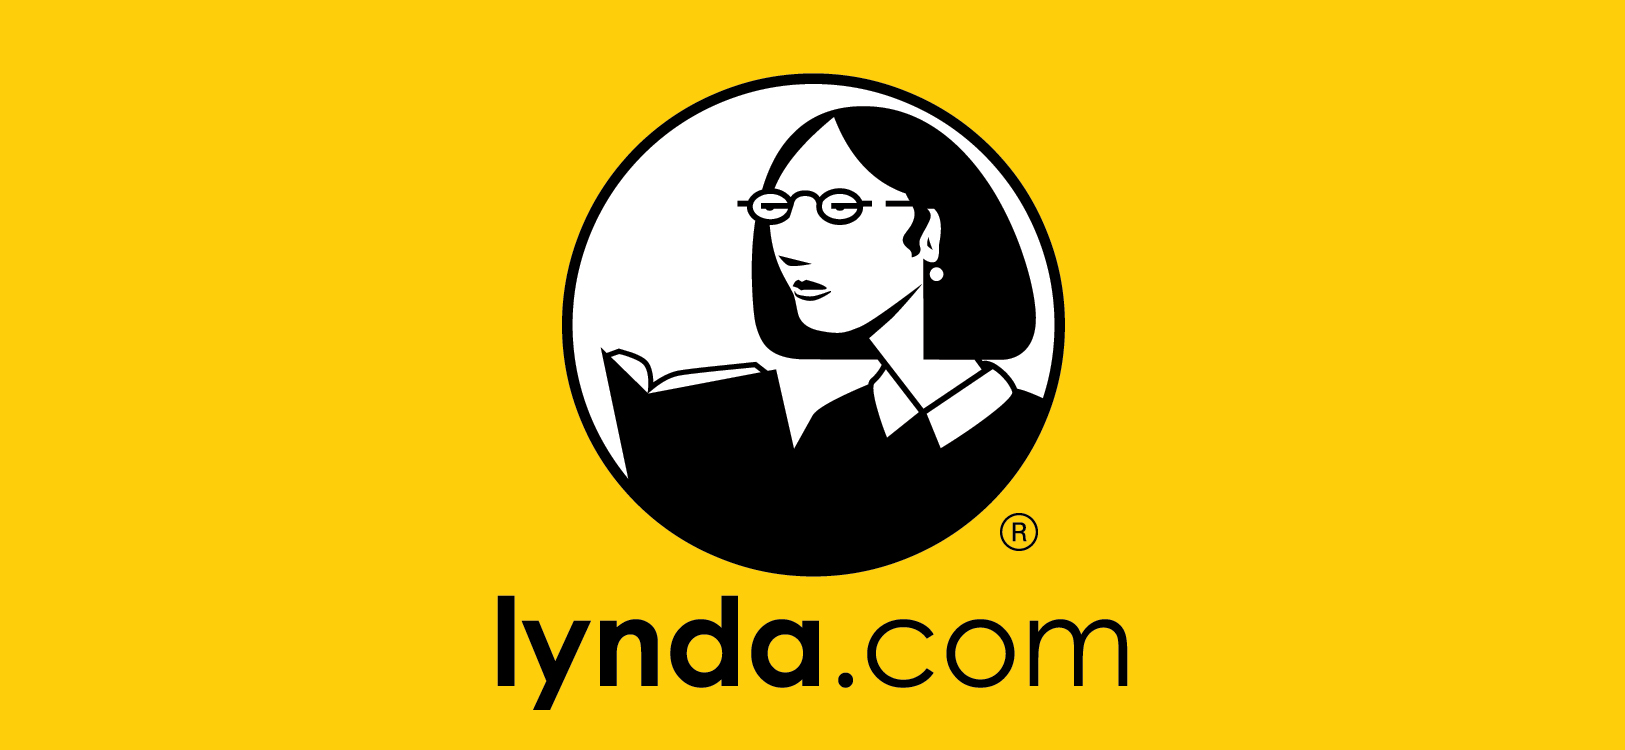 lynda.com, learn anything